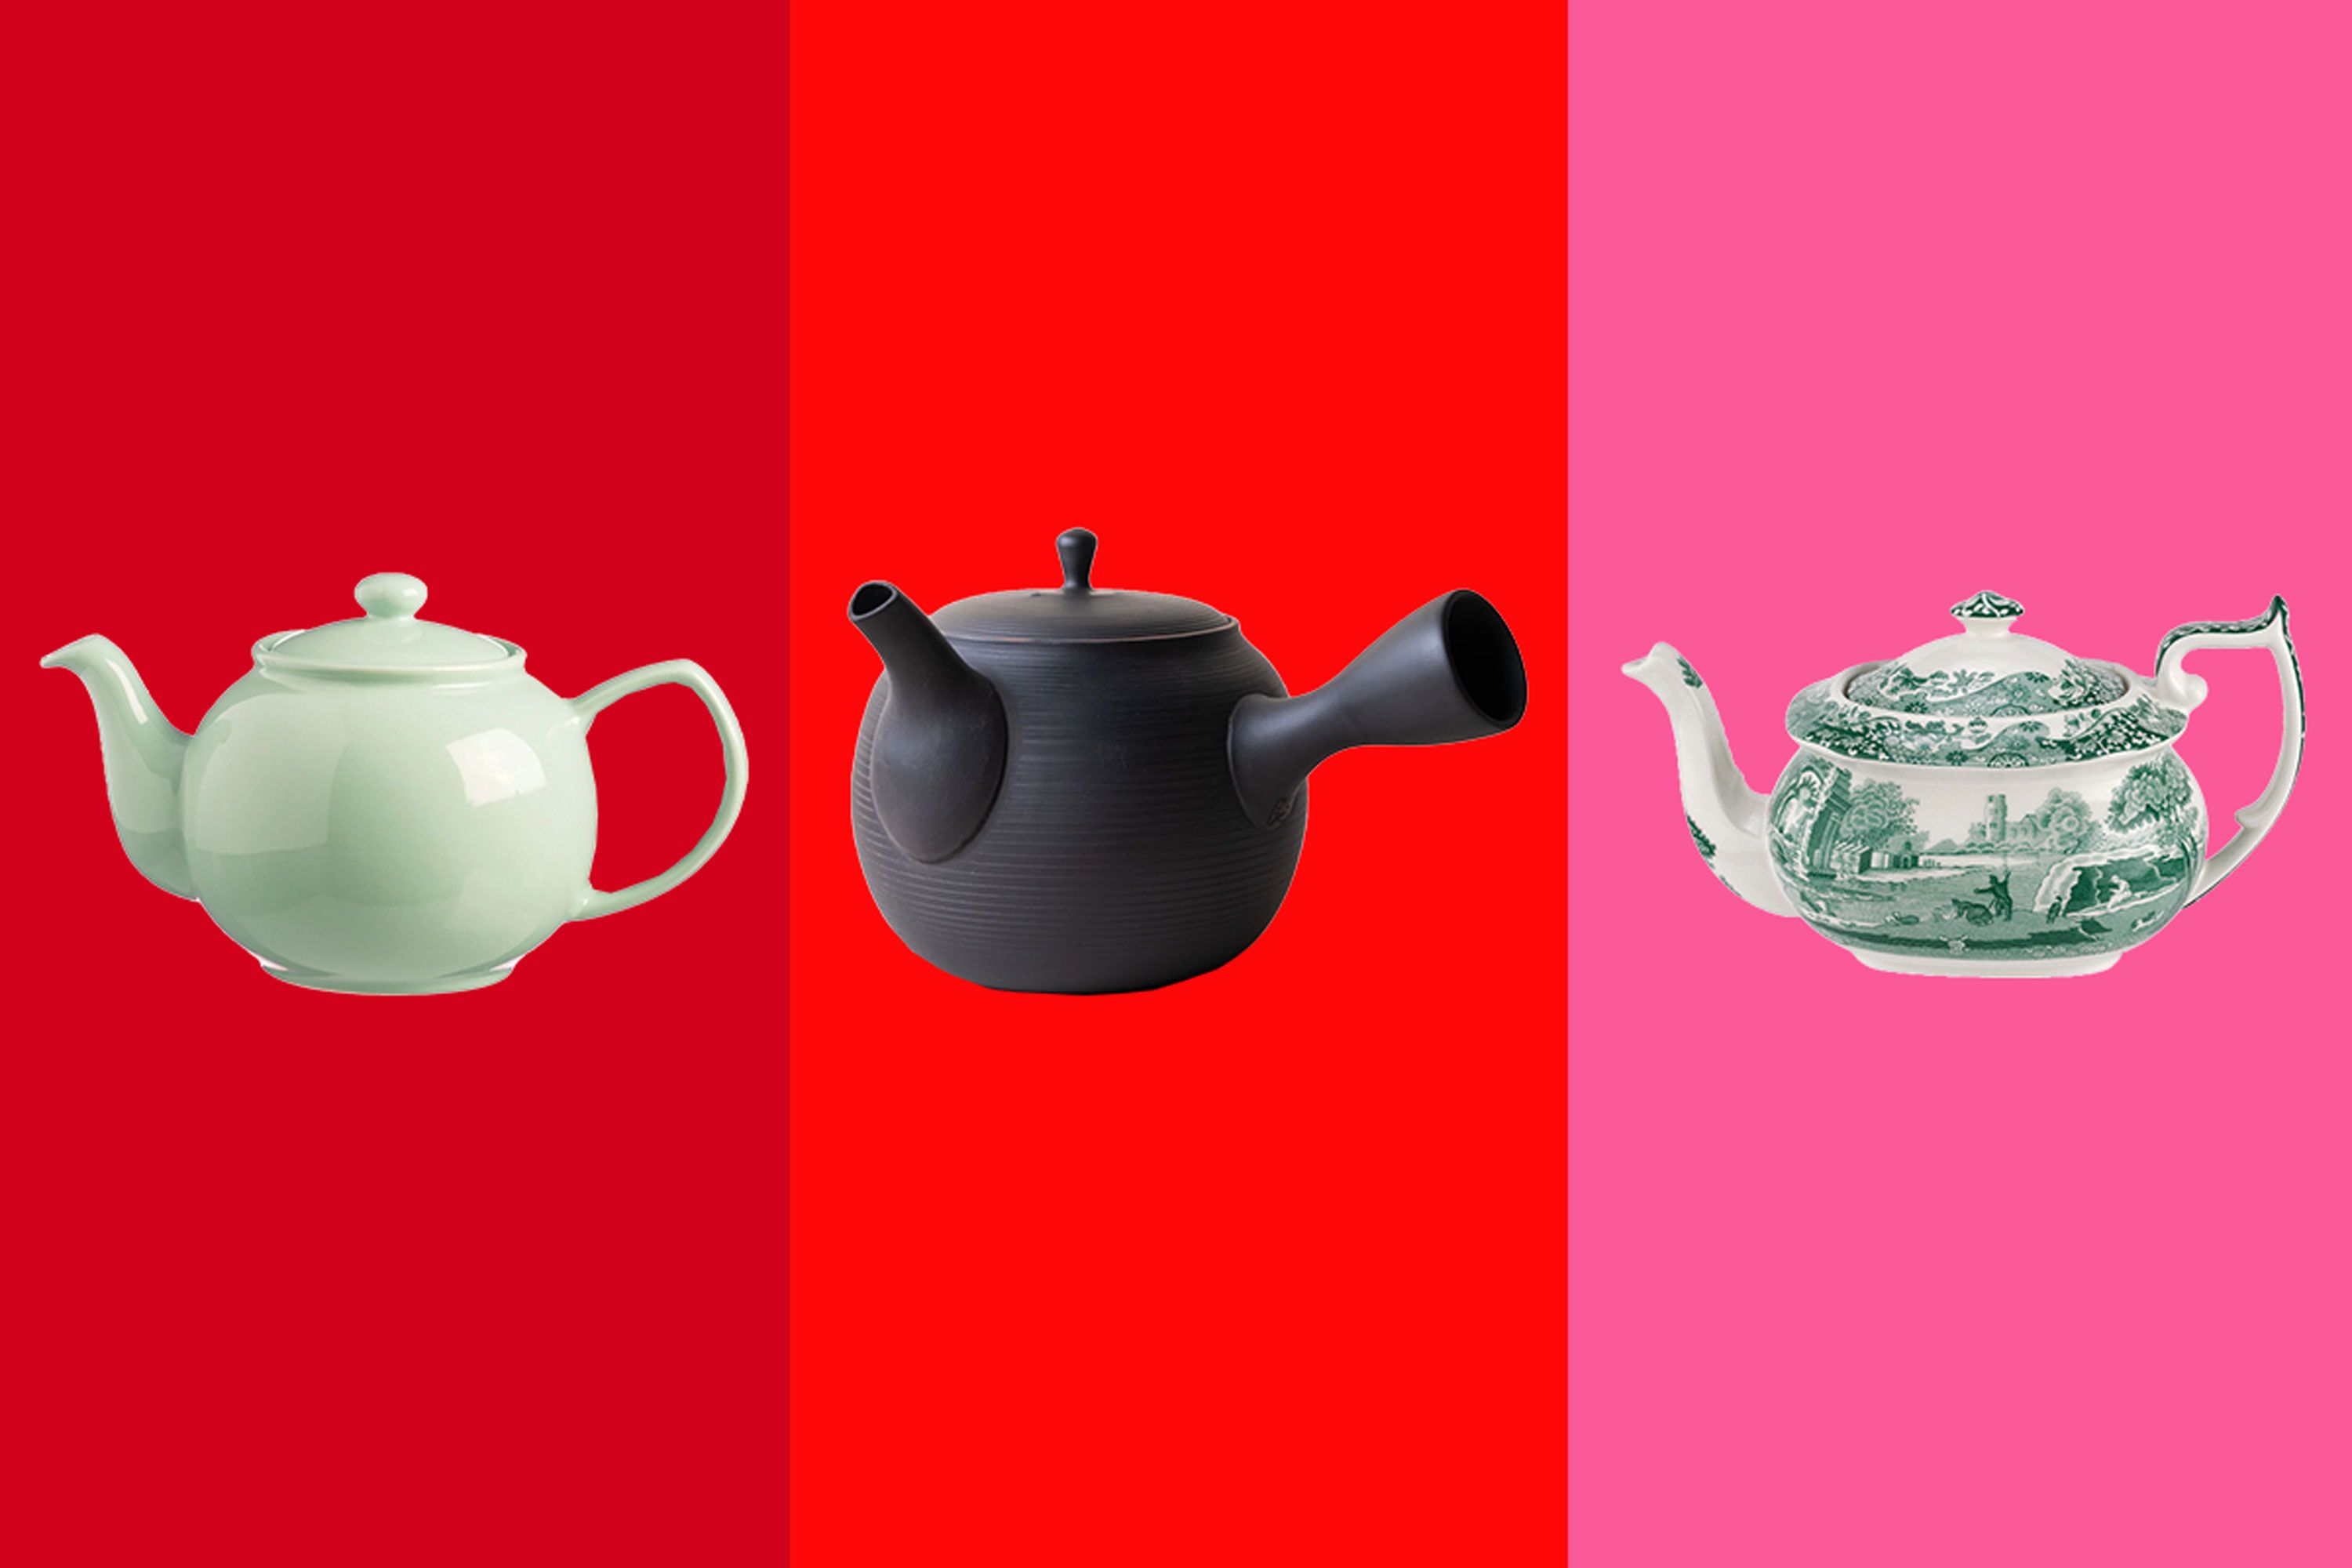 Thermal Teapot Infuser : Target